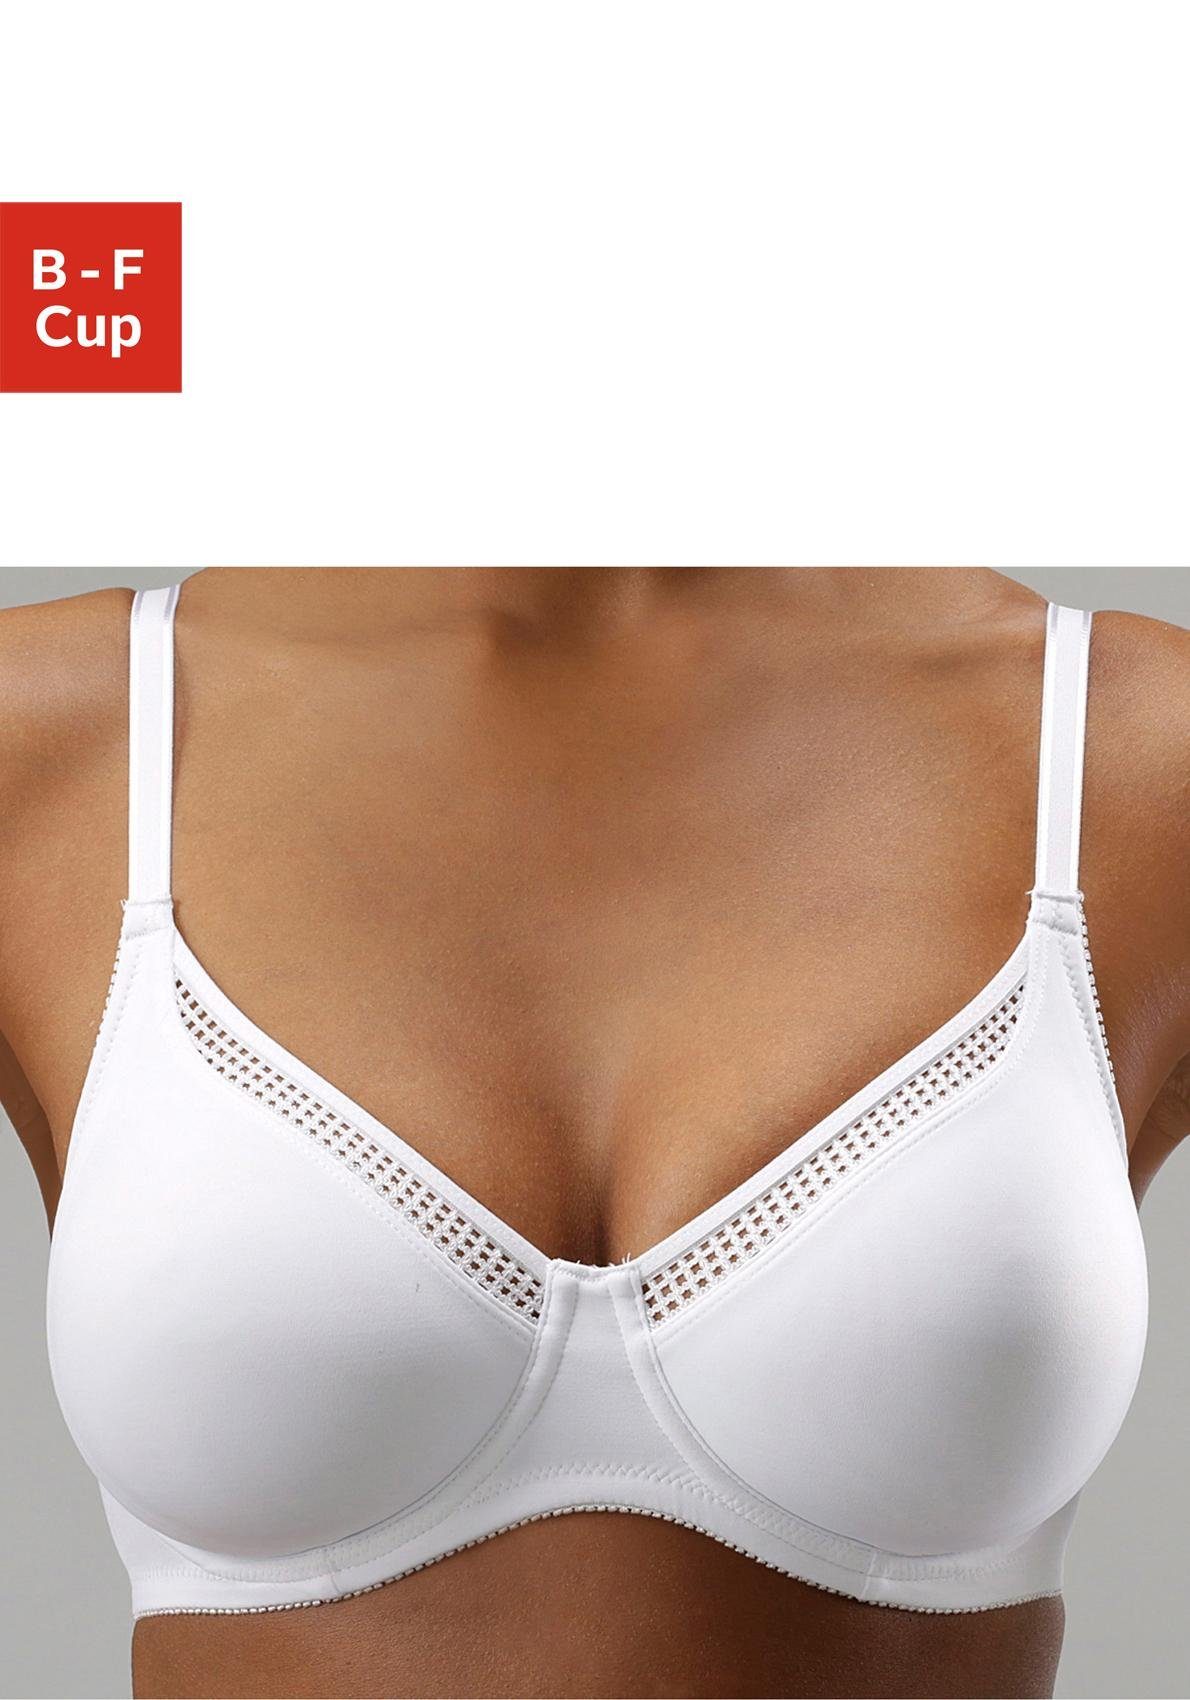 Durf Stationair Molester Nuance T-shirt-bh met beugel microvezel met naadloze cups en beugels in de  webshop | LASCANA